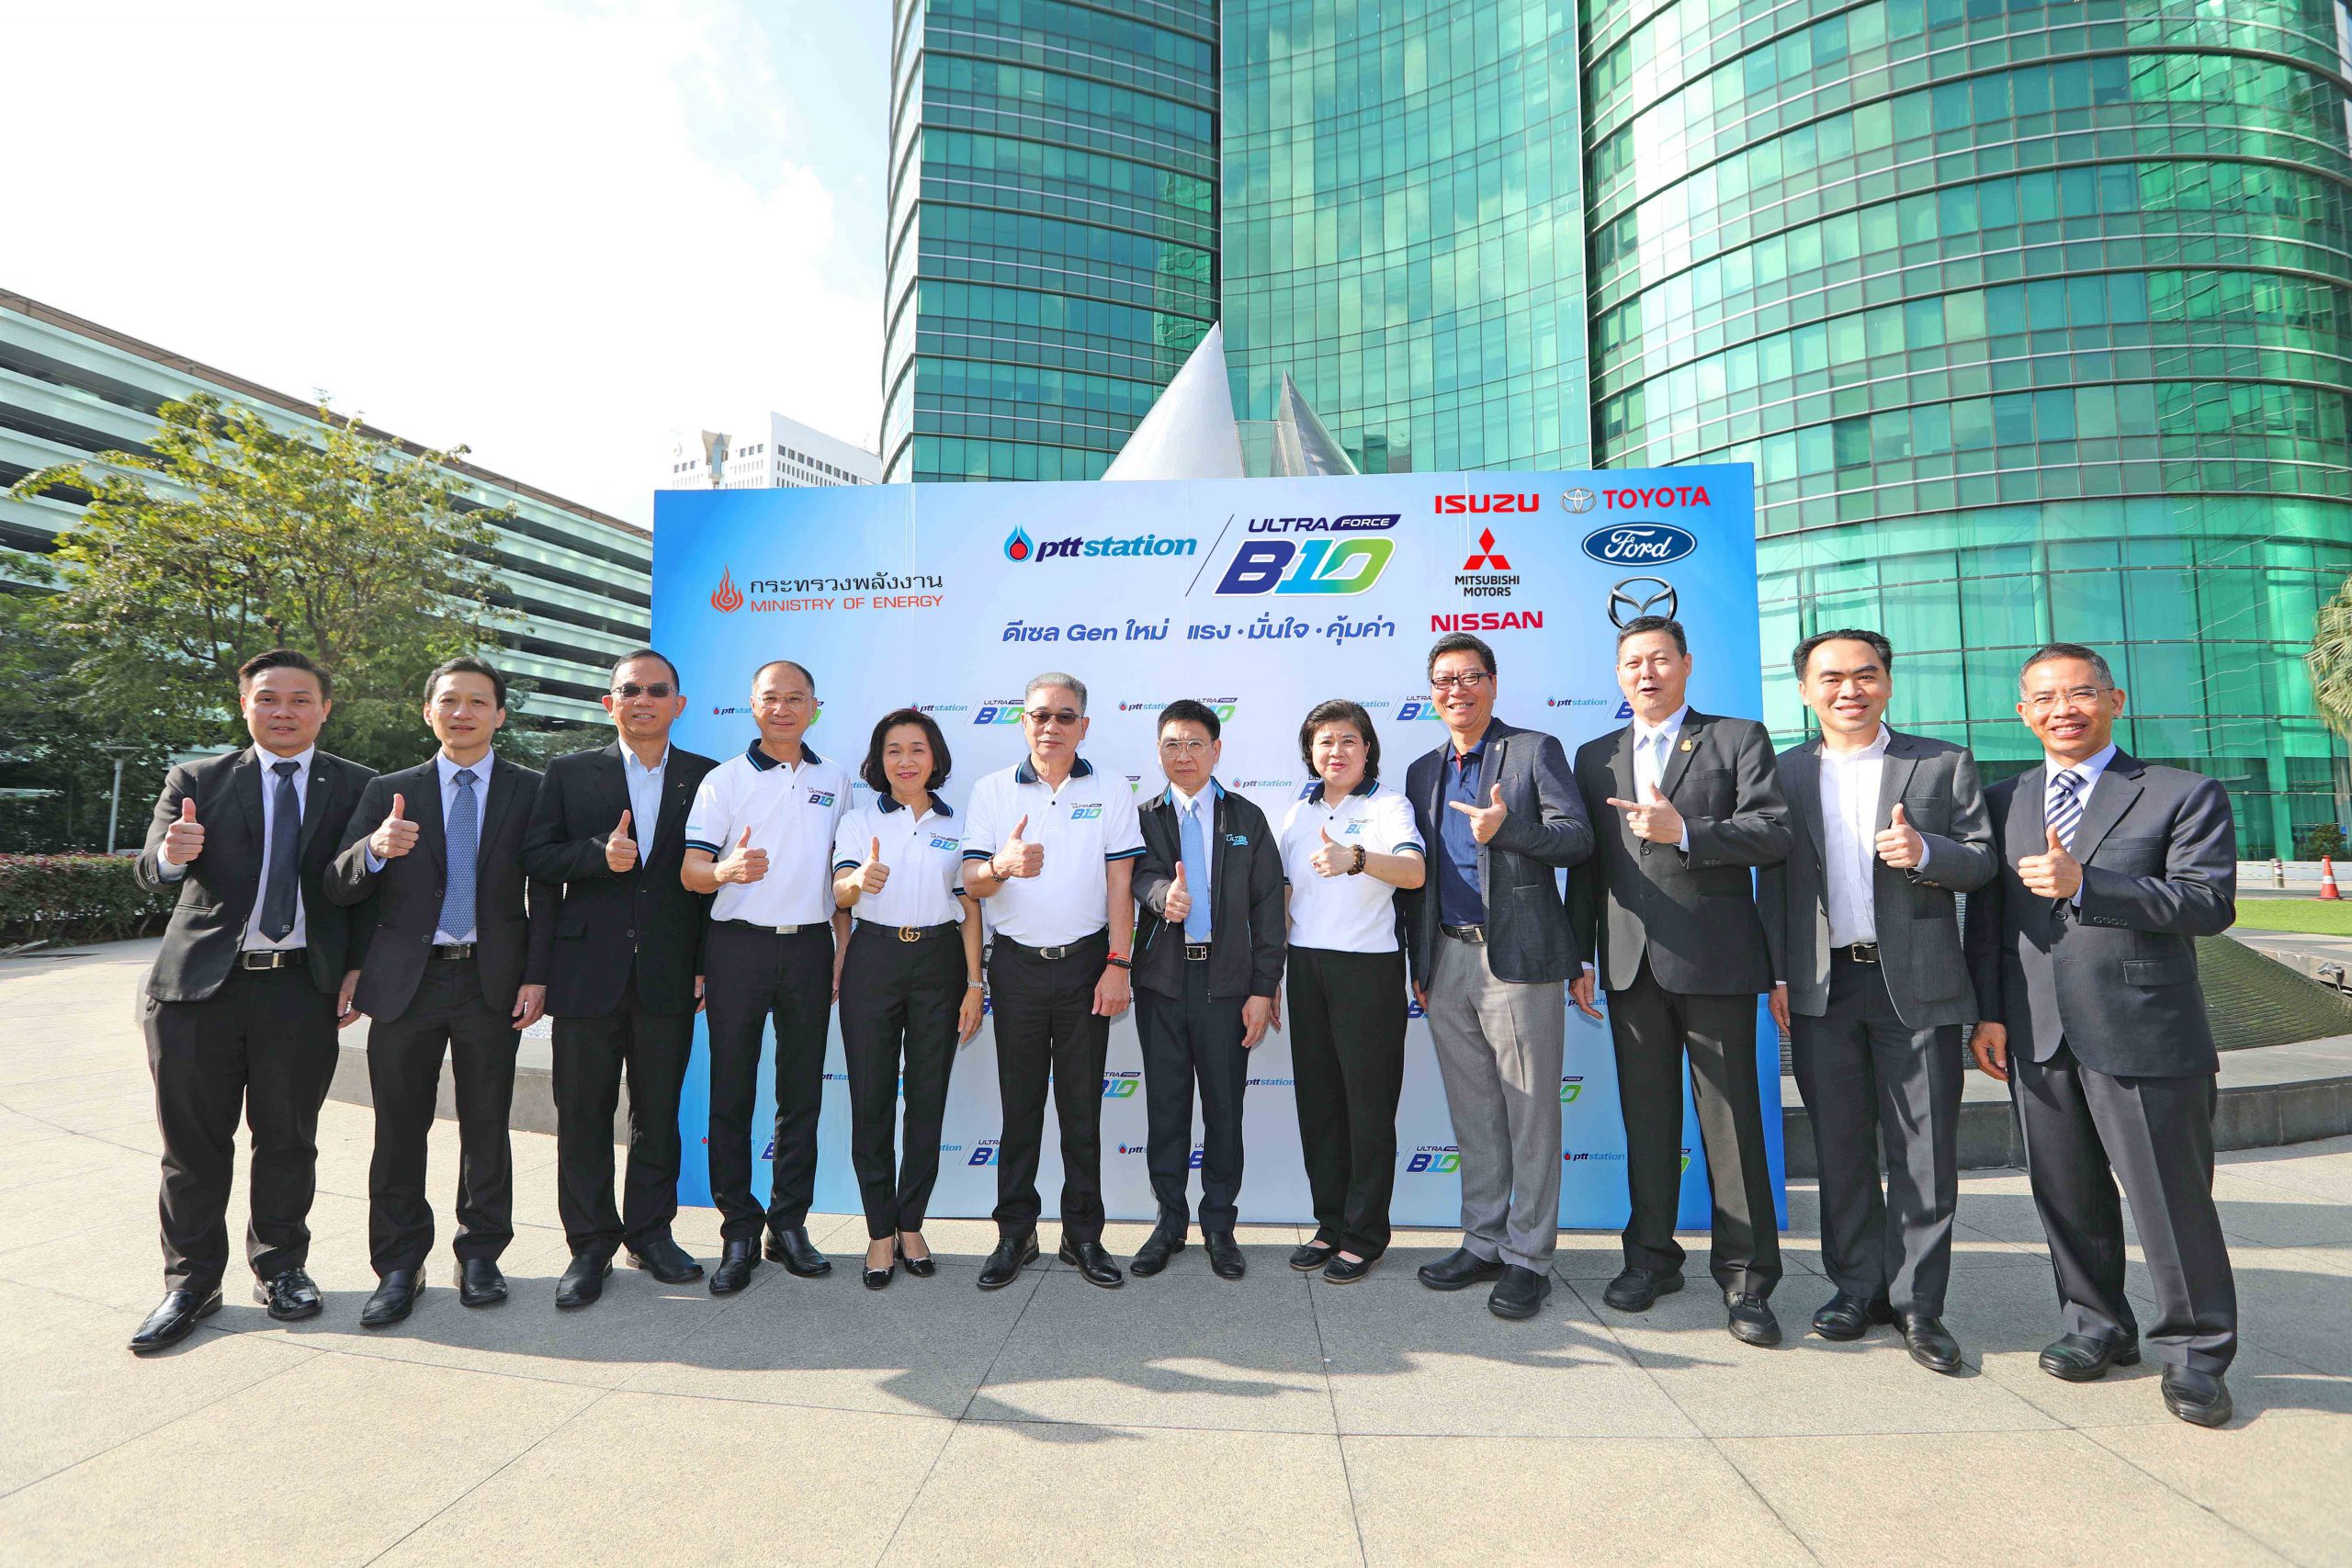 มิตซูบิชิ มอเตอร์ส ประเทศไทย ร่วมคาราวานสนับสนุน การใช้น้ำมันดีเซล บี10 กับกรมธุรกิจพลังงาน